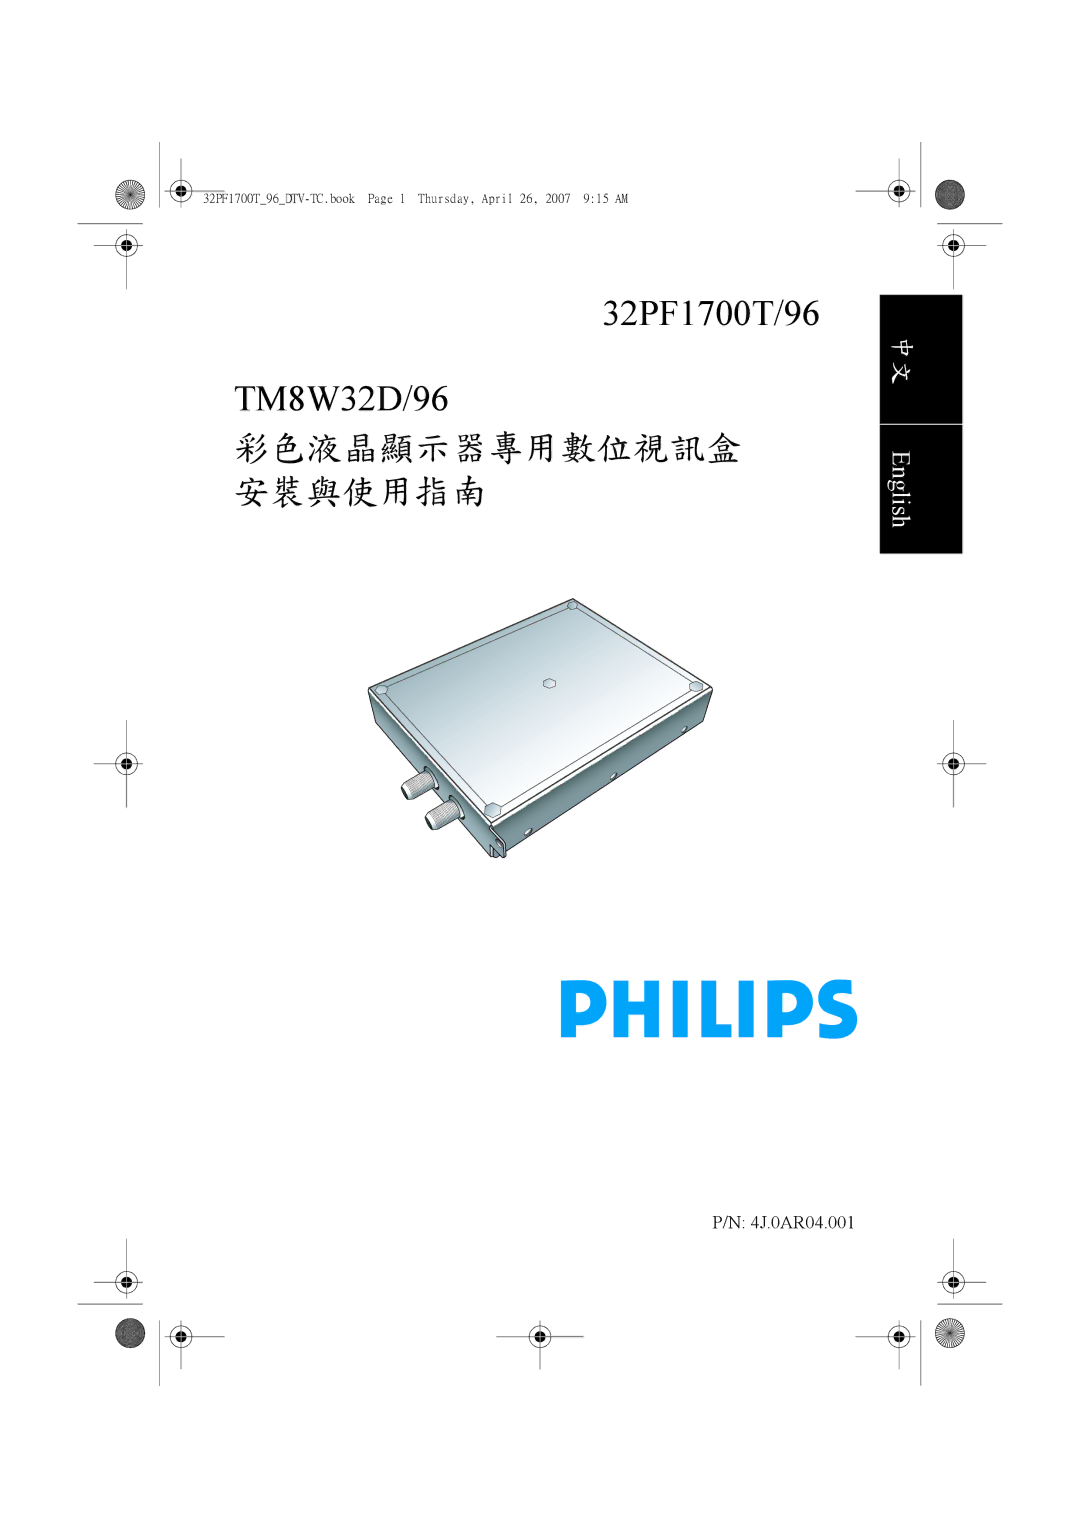 Philips manual 32PF1700T/96 TM8W32D/96 